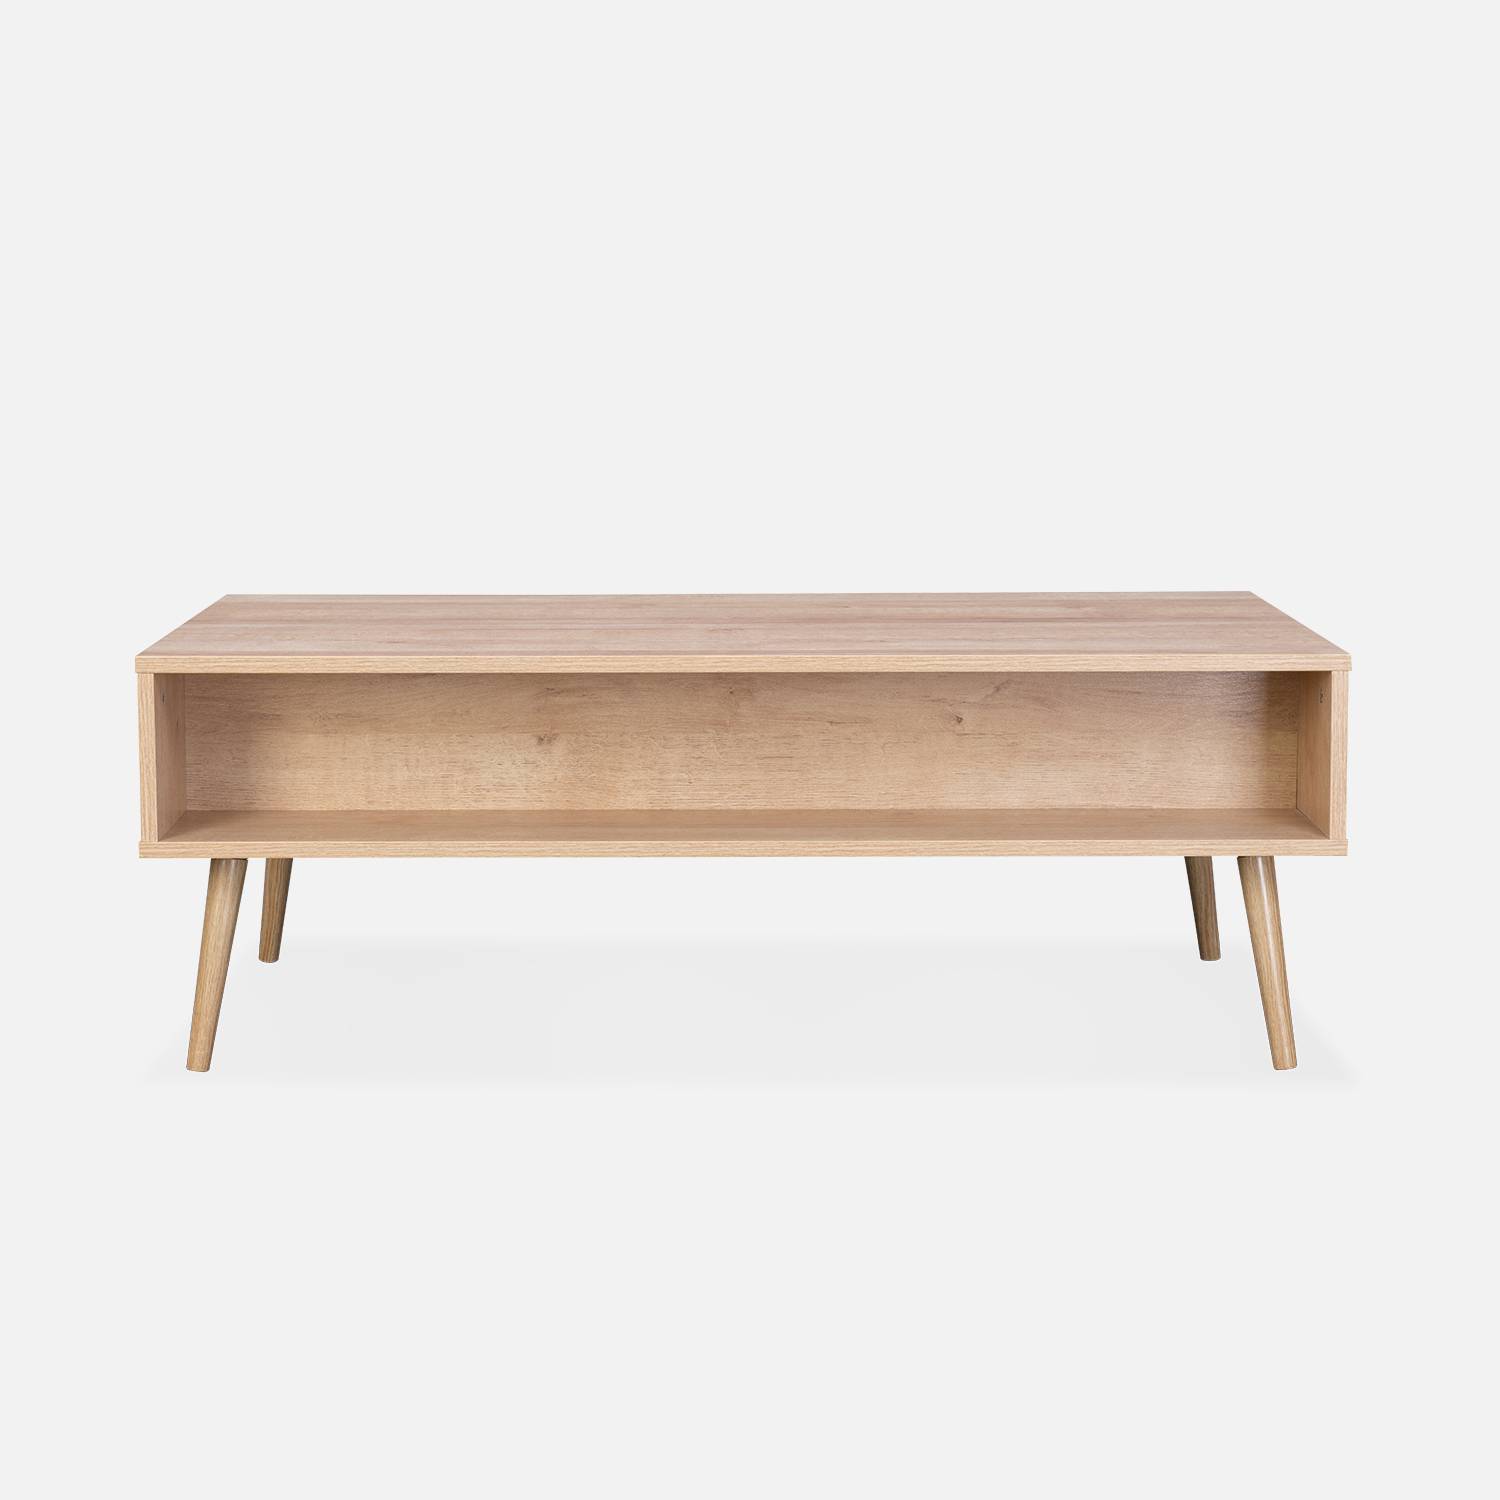 Table basse en cannage 110 x 59 x 39 cm - Bohème - Naturel, 1 tiroir, 1 espace de rangement, pieds scandinaves Photo6